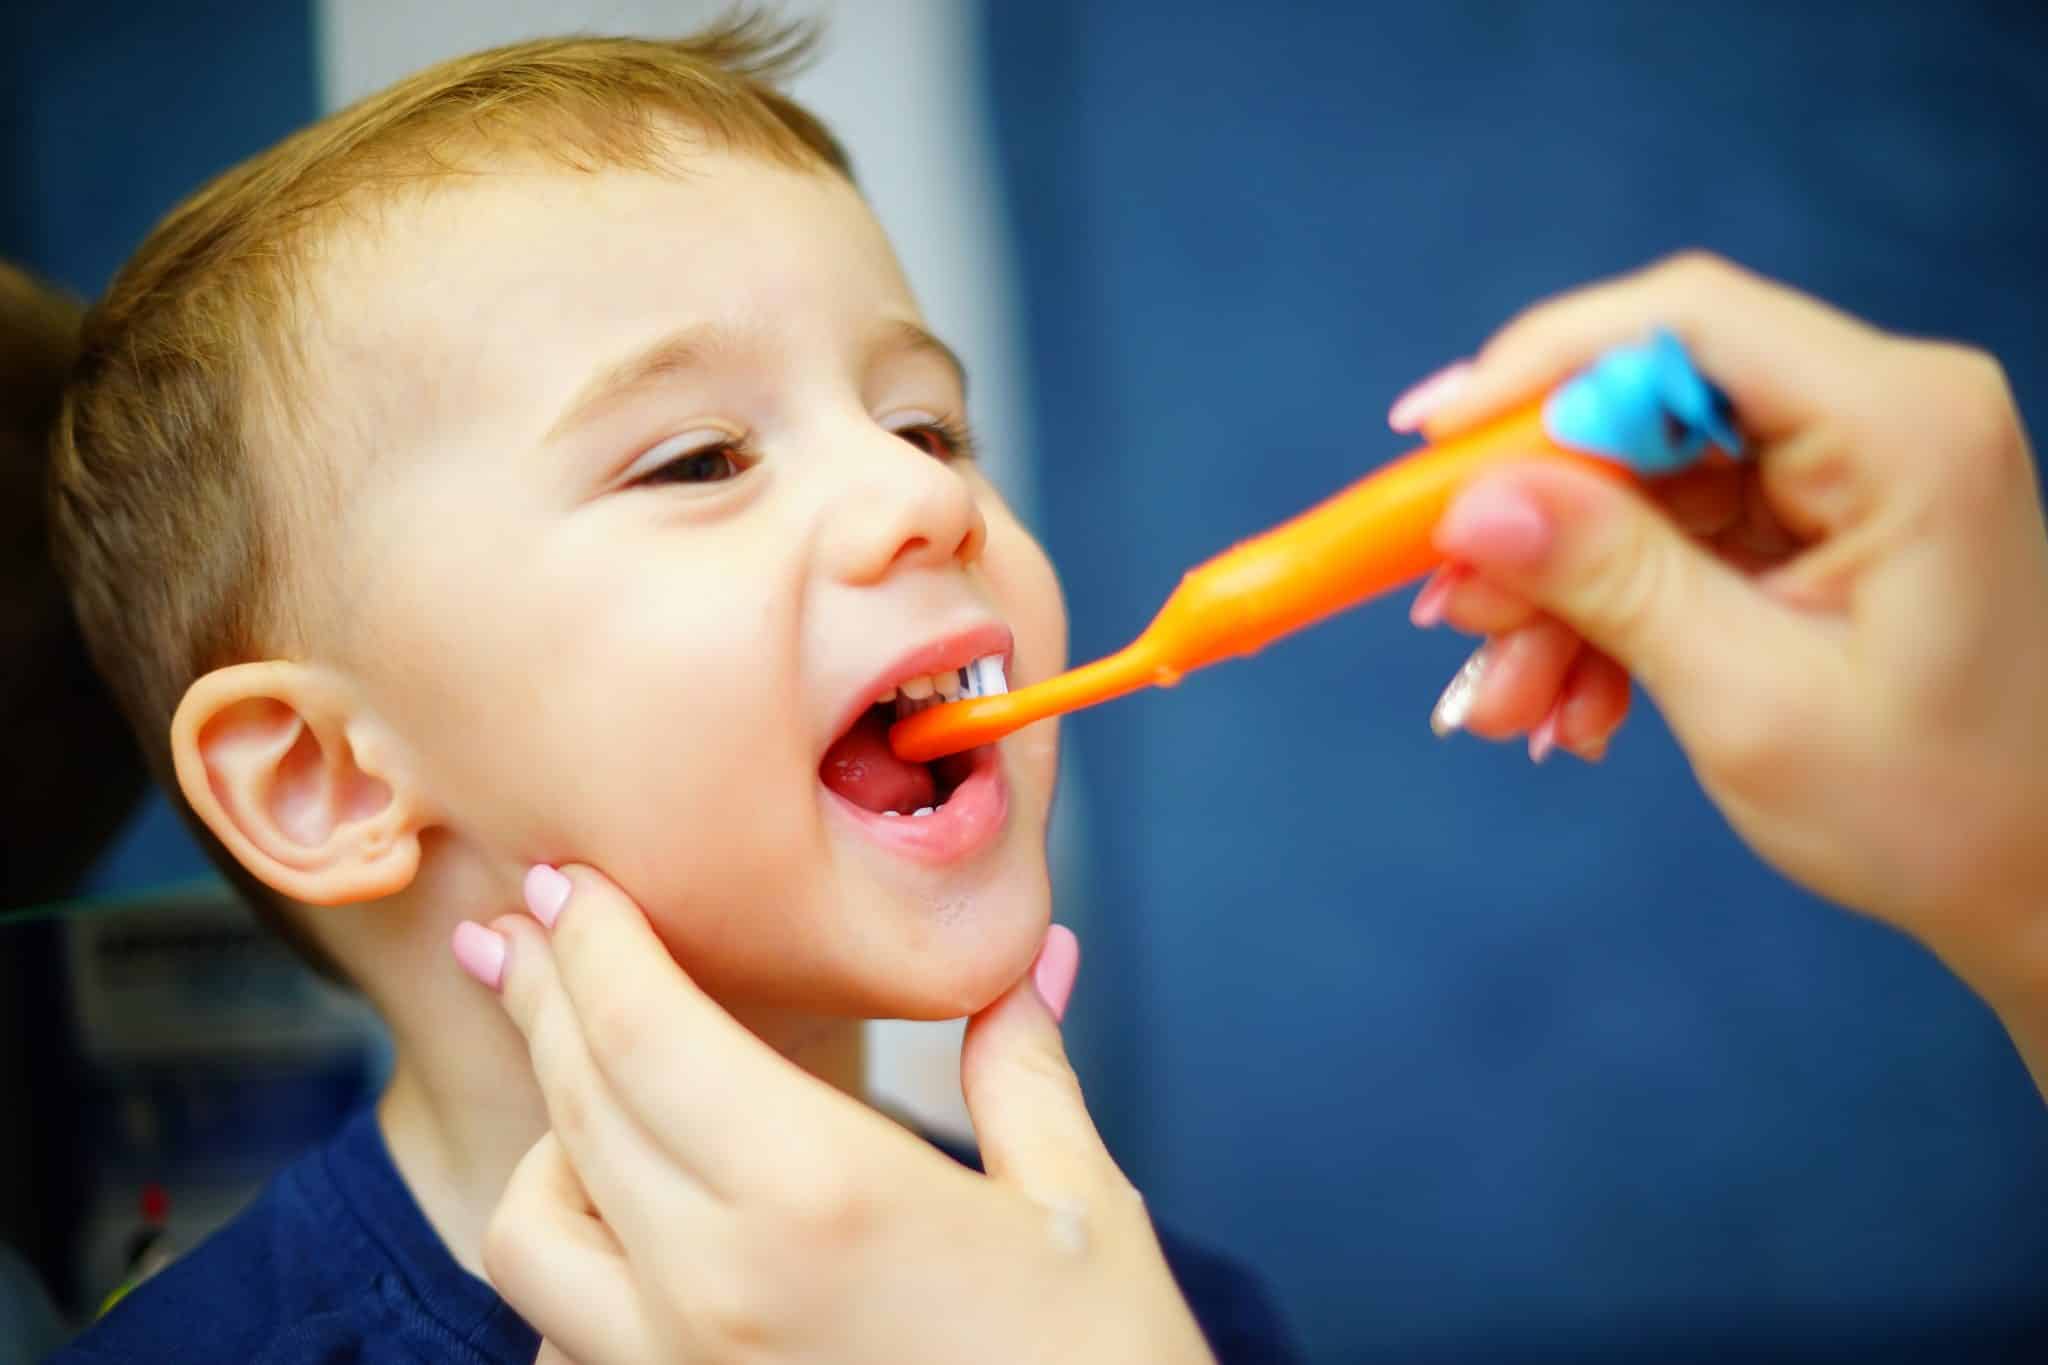 Wir sehen den Kopf eines Kinds mit offenem Mund; dazu Frauenhände, die eine Zahnbürste halten und ihm die Zähne putzen.